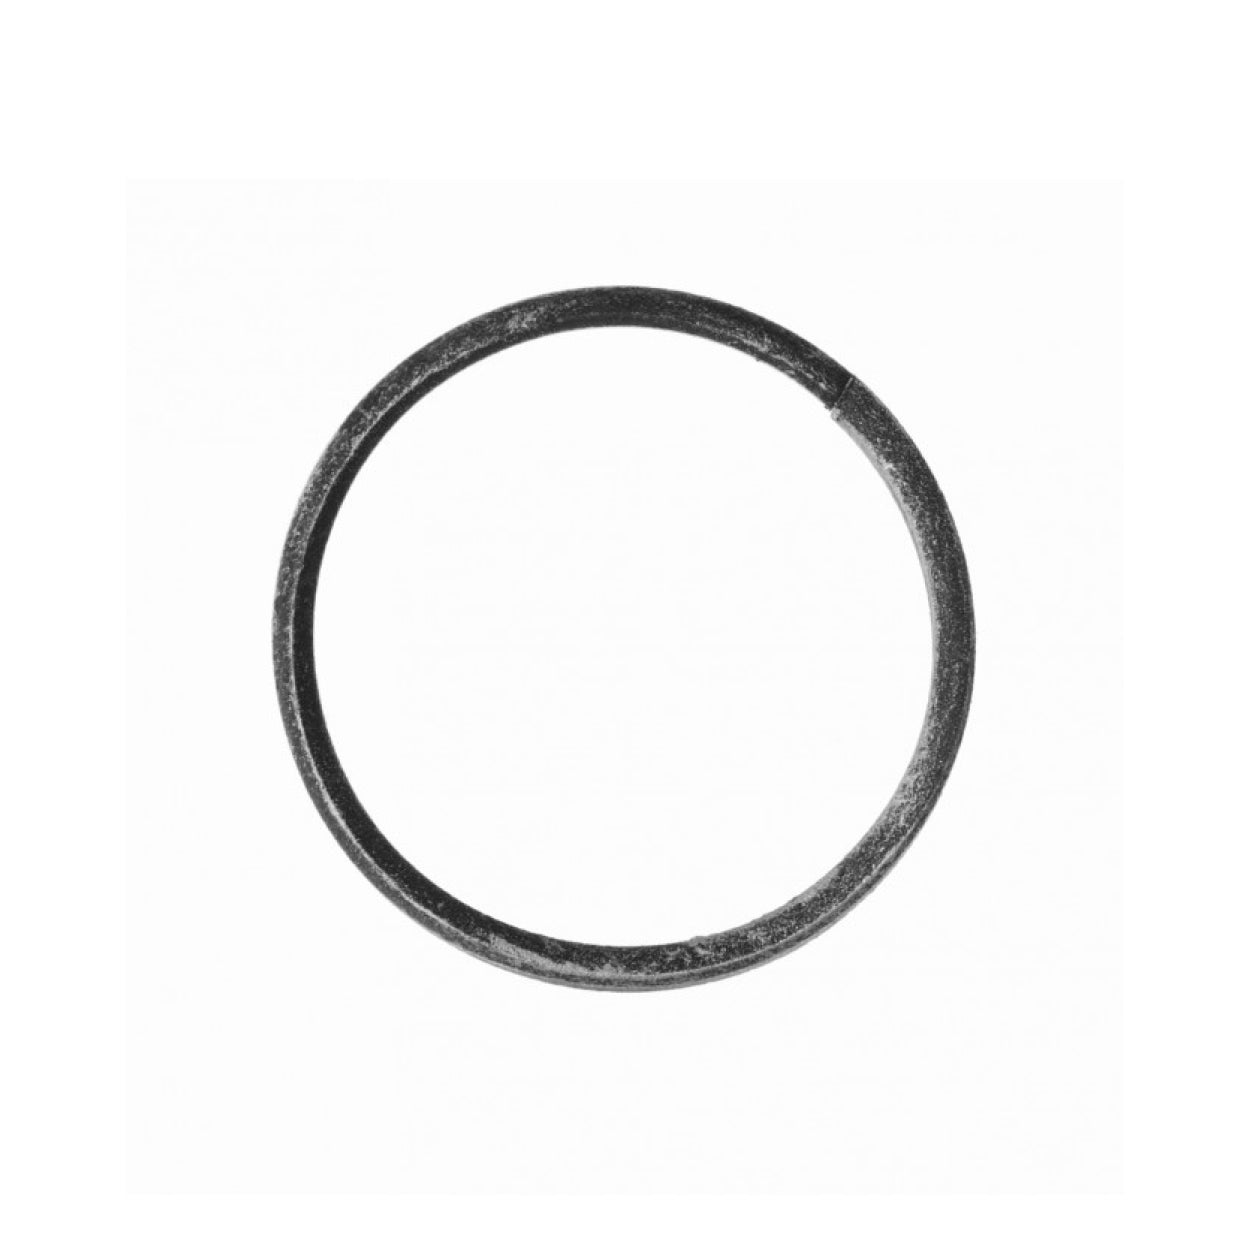 Element kuty ze stali, ozdobny O (okrągły, koło) FI 120 12x16